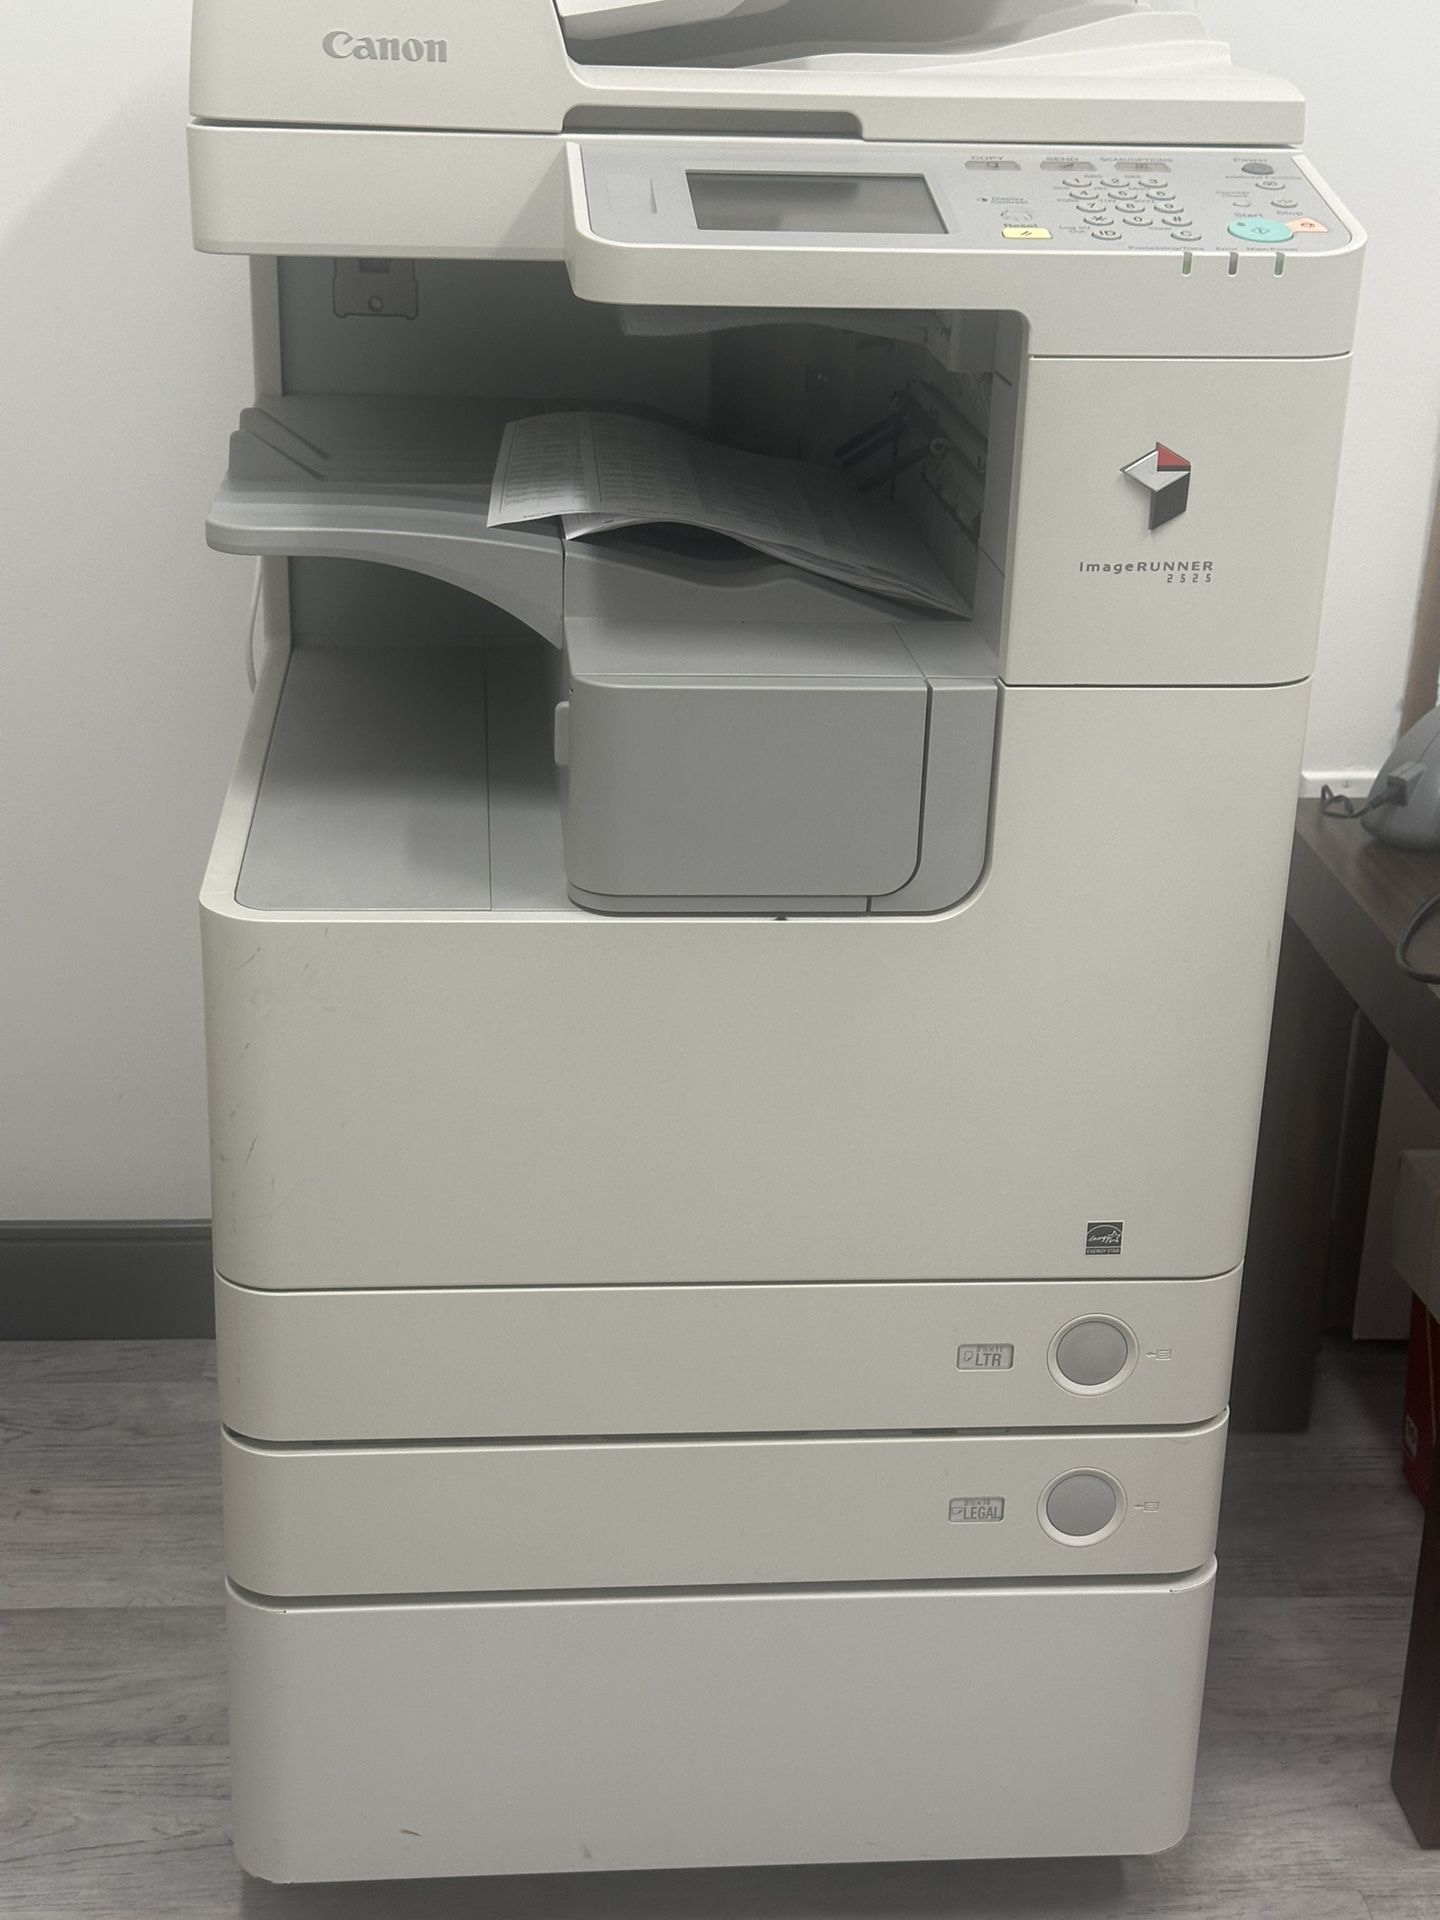 Canon Image Runner 2525 Printer Copier Scanner Machine 